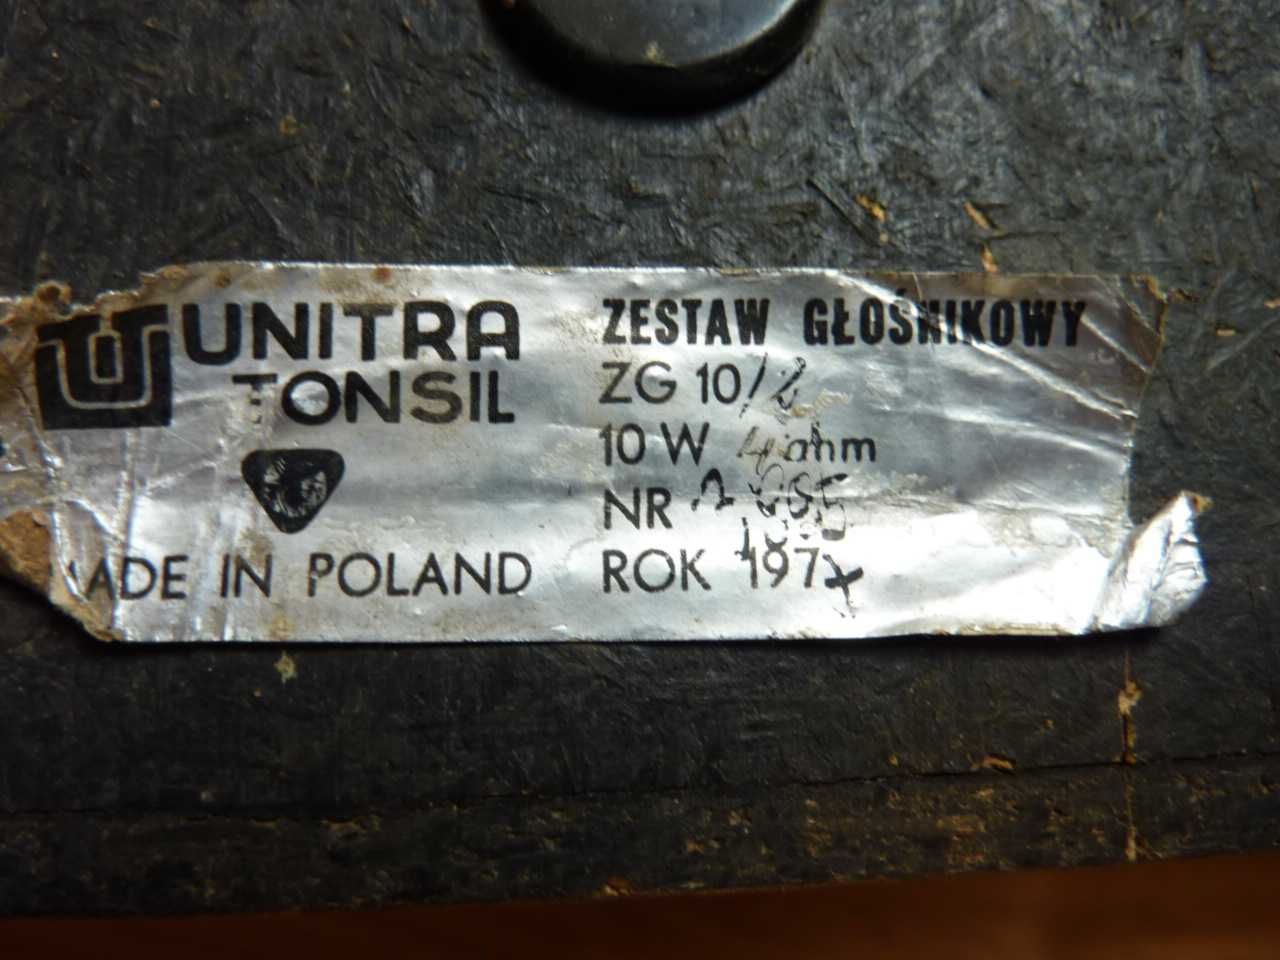 kolumny głośniki Unitra Tonsil ZG 10